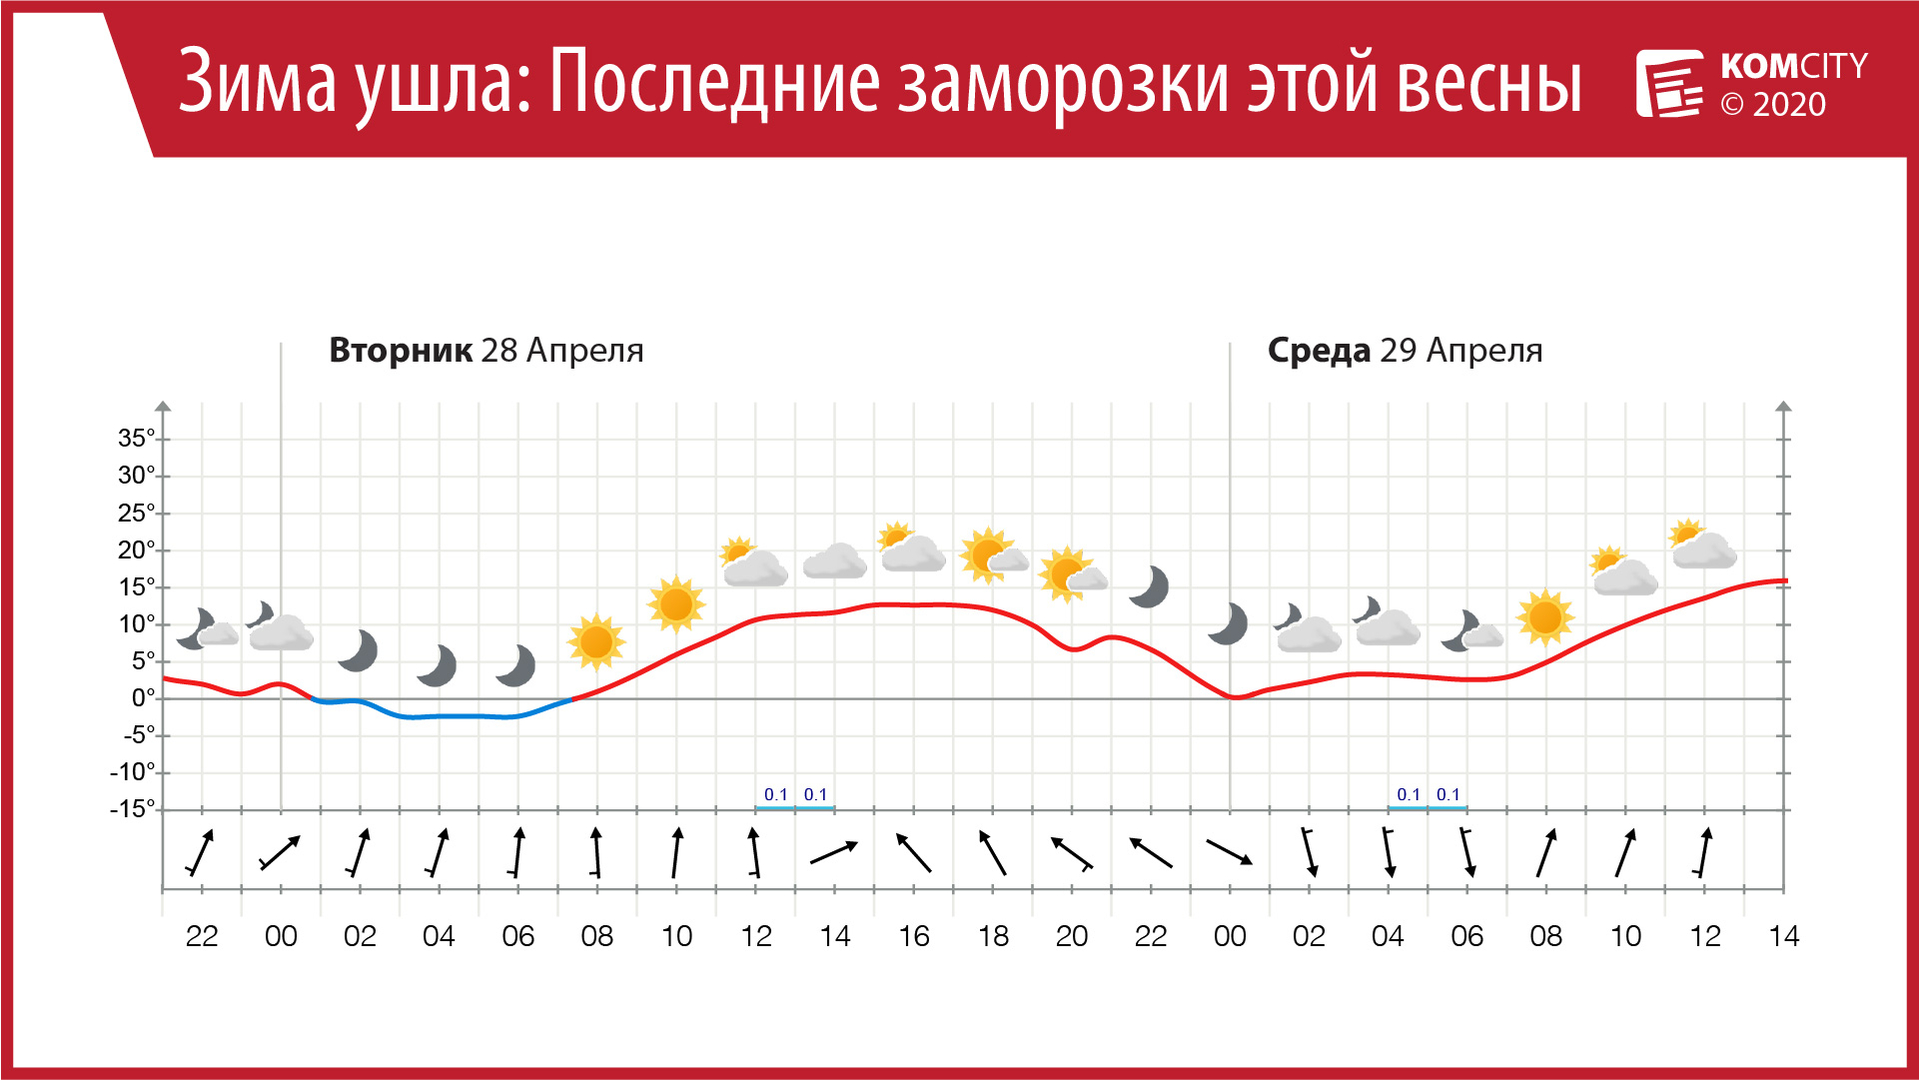 Последний «минус»: С завтрашнего дня ночные температуры в Комсомольске-на-Амуре перестанут опускаться ниже нуля